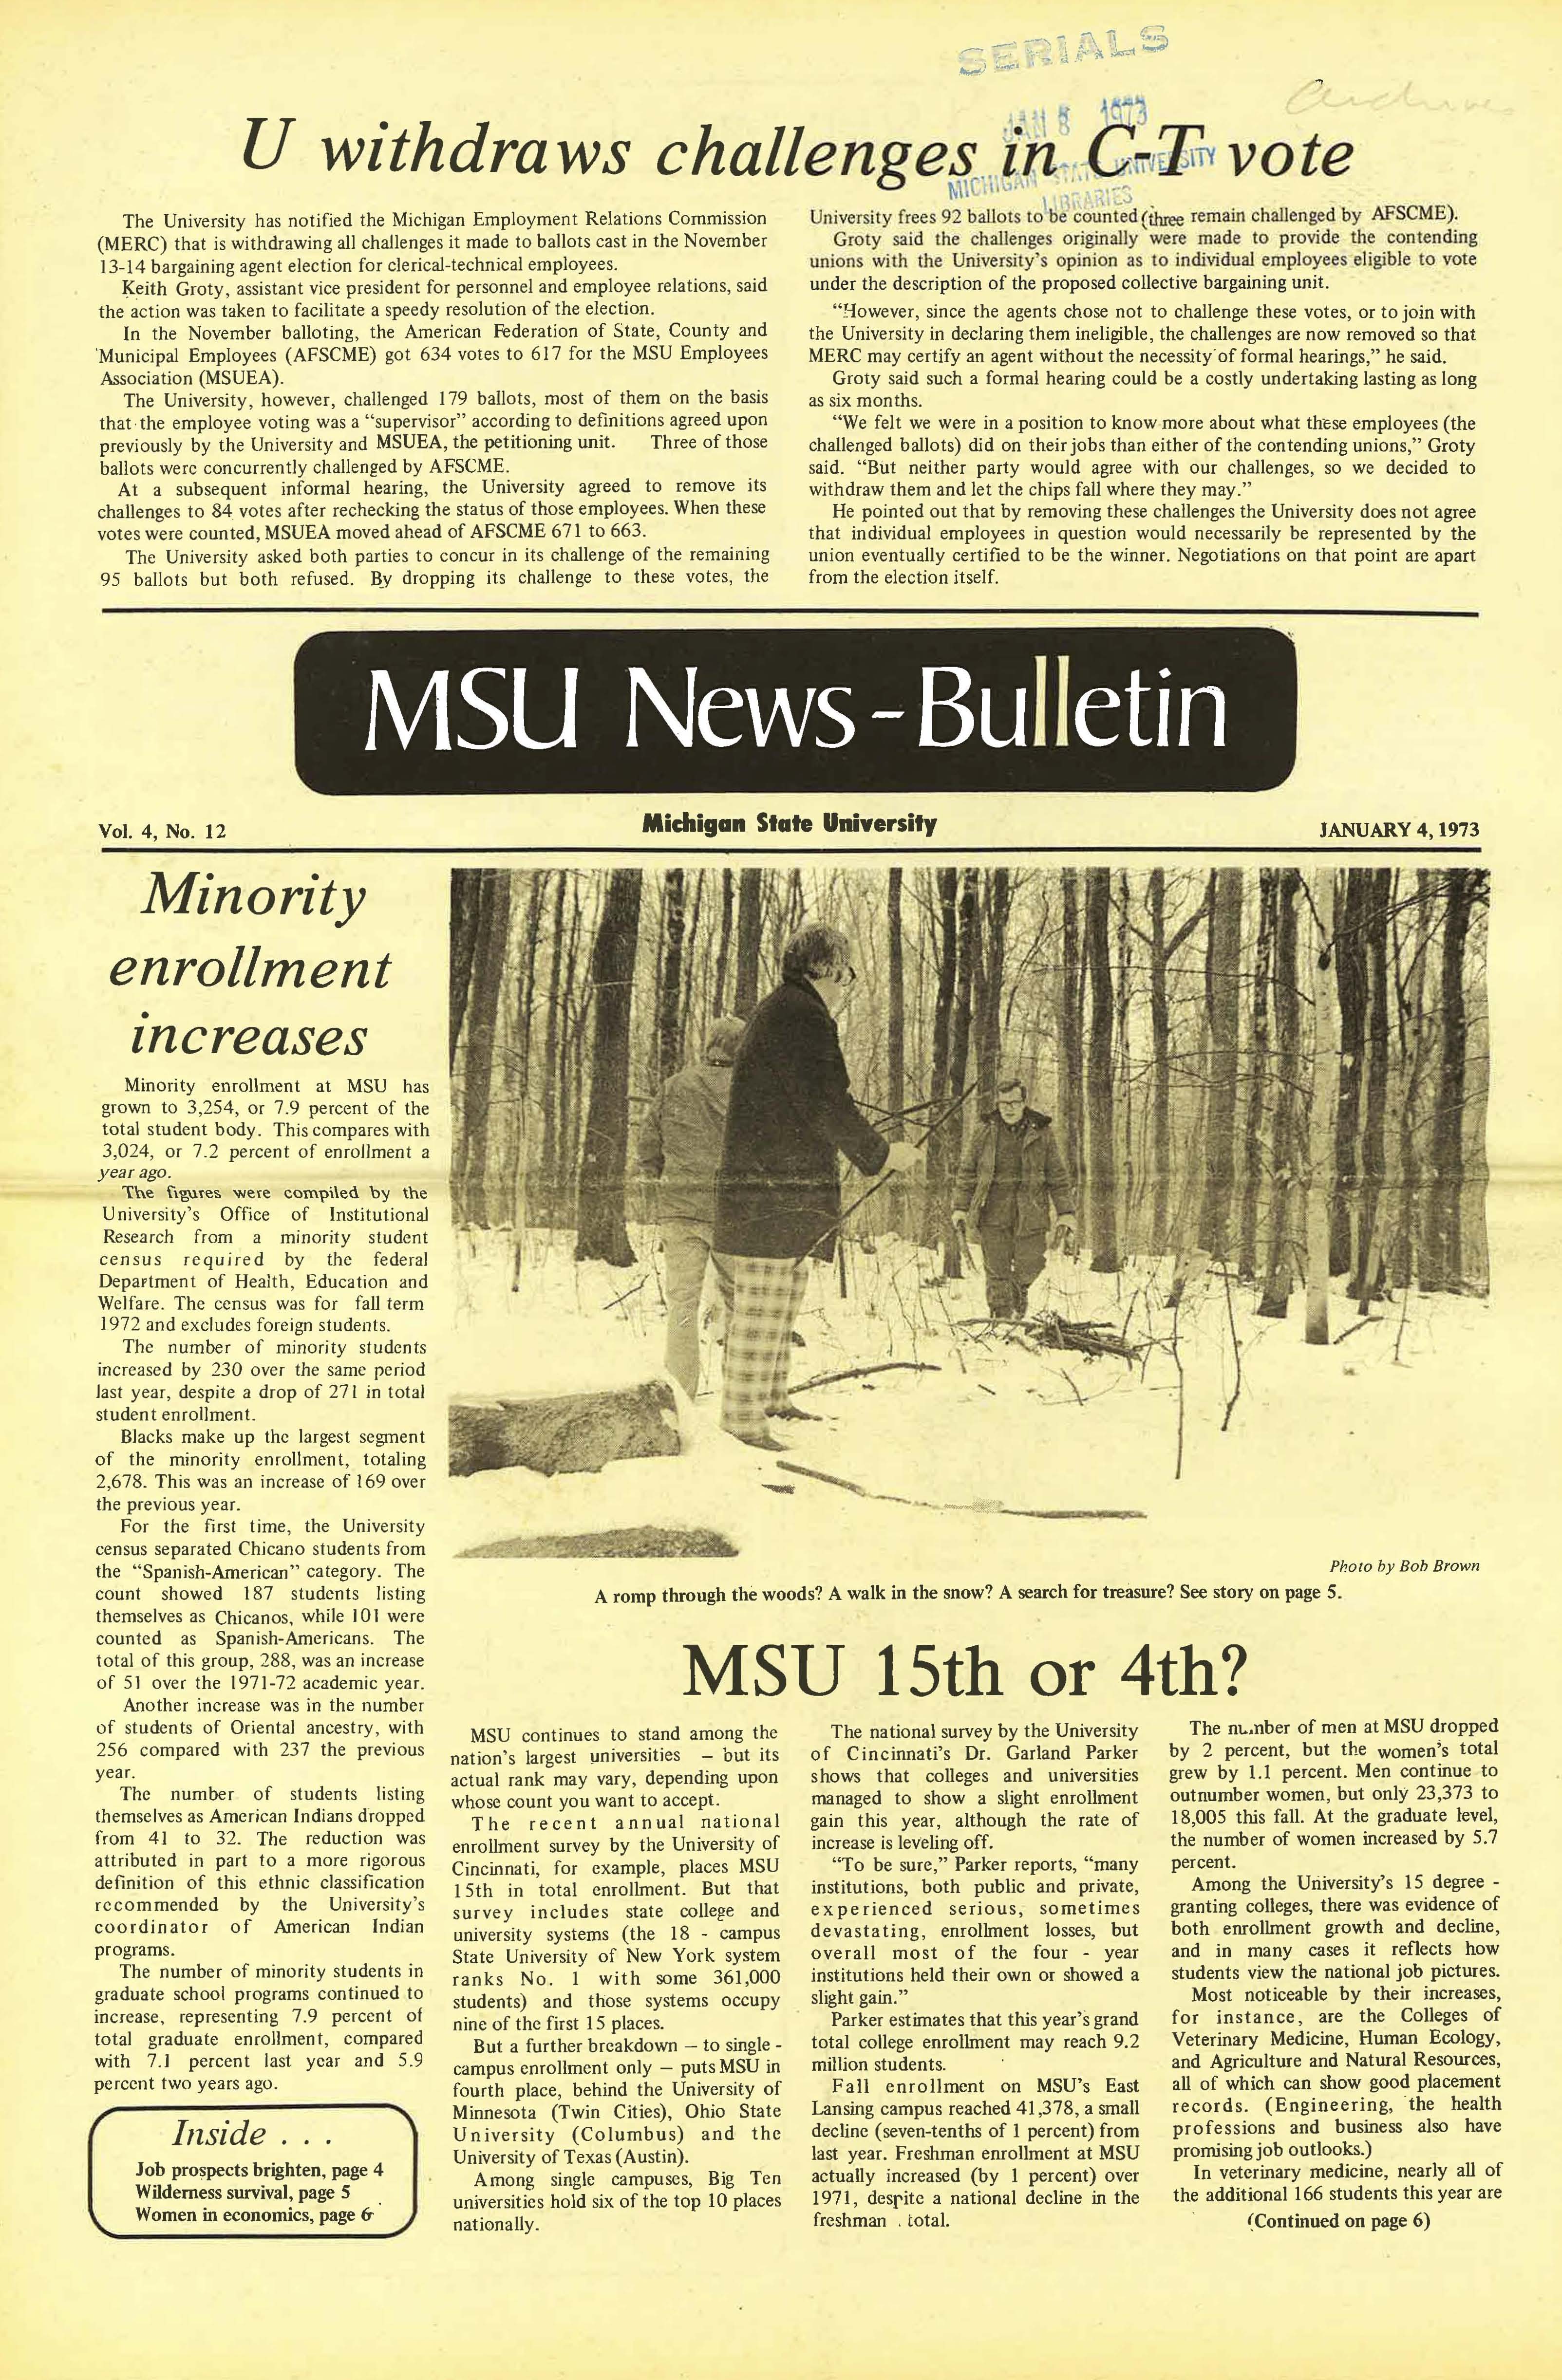 MSU News Bulletin, vol. 4, No. 27, May 3, 1973